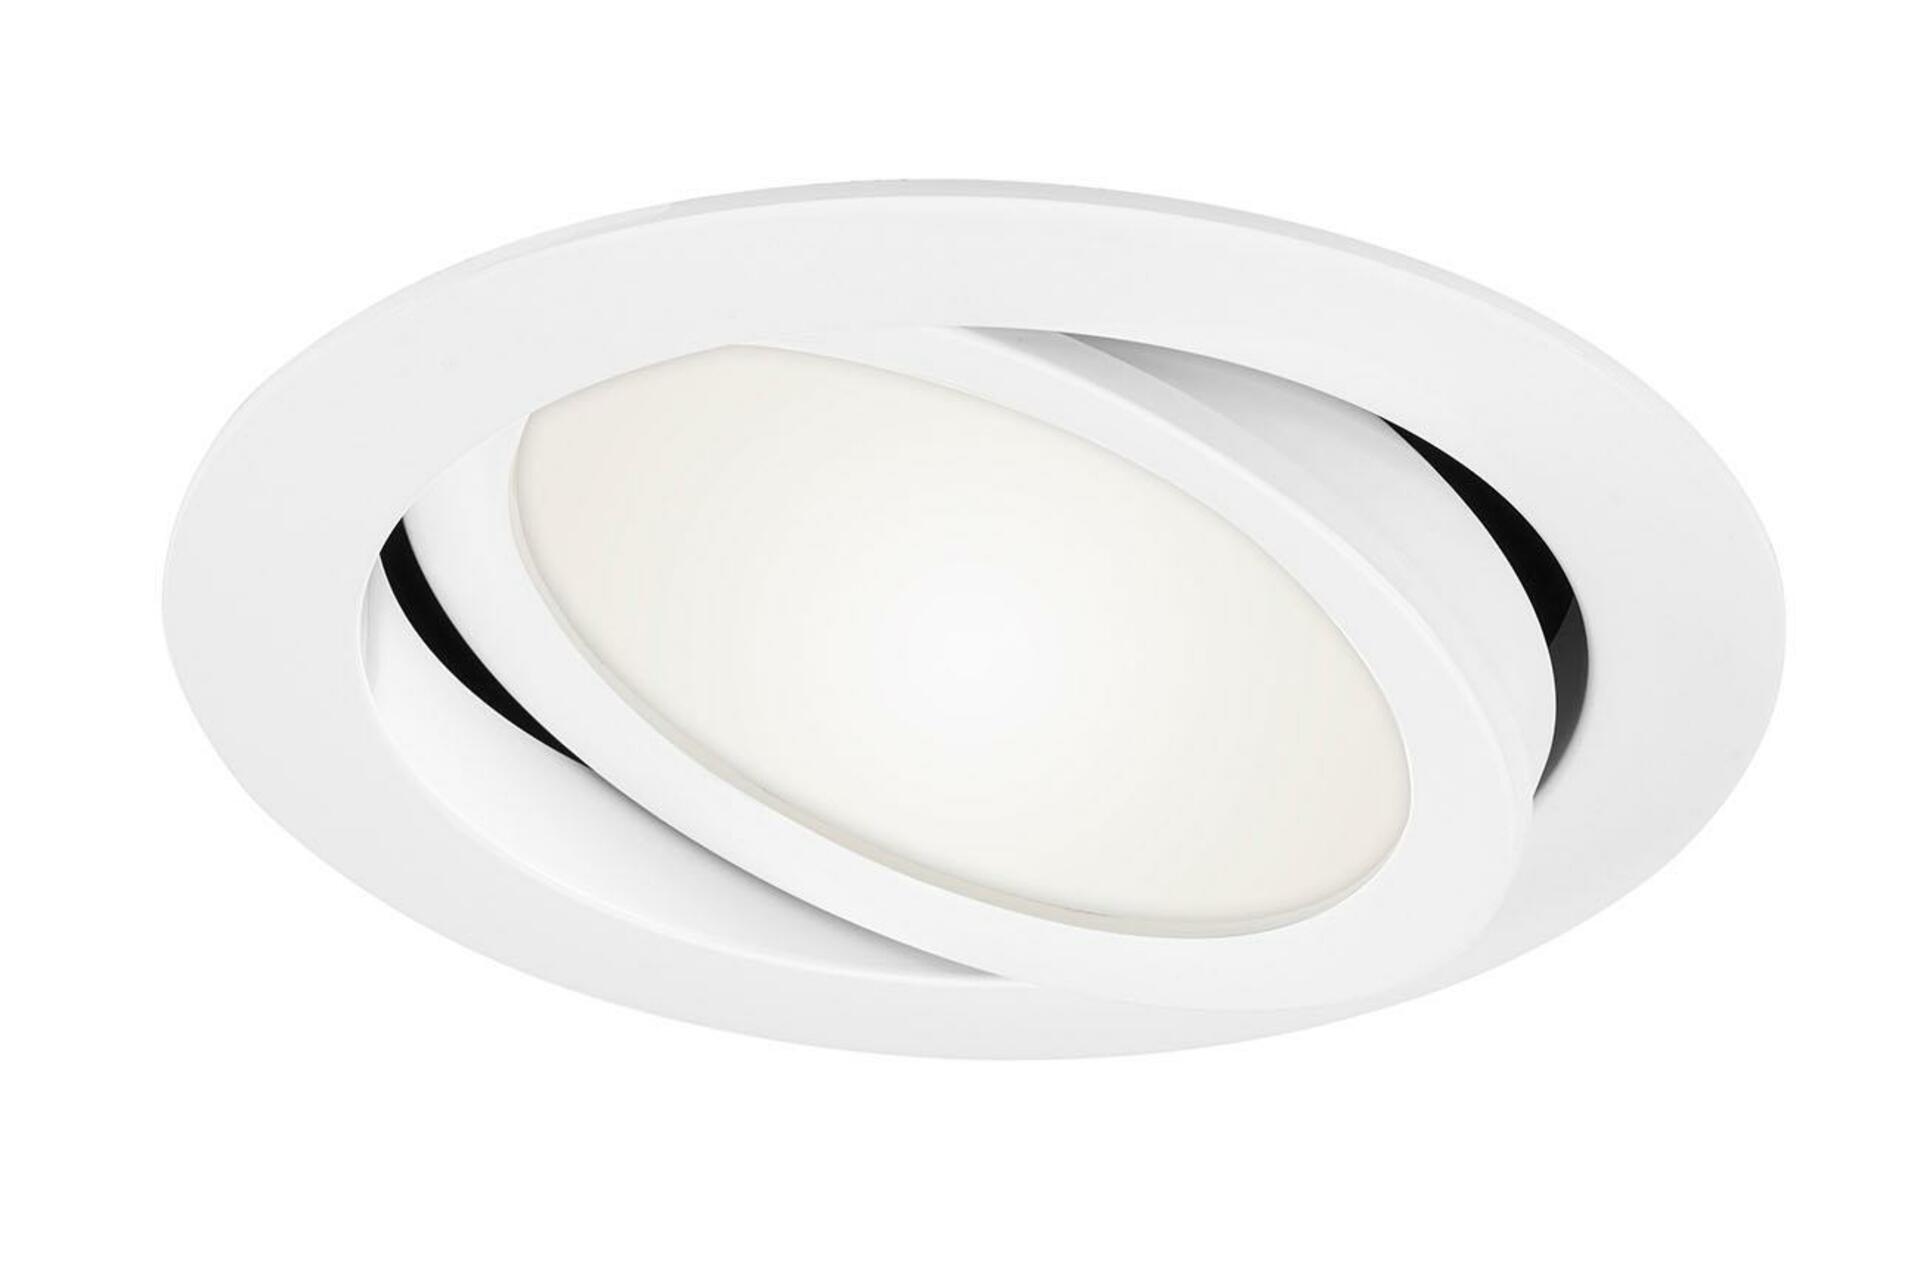 BRILONER LED vestavné svítidlo, pr. 14 cm, 9 W, bílé BRI 7116-416